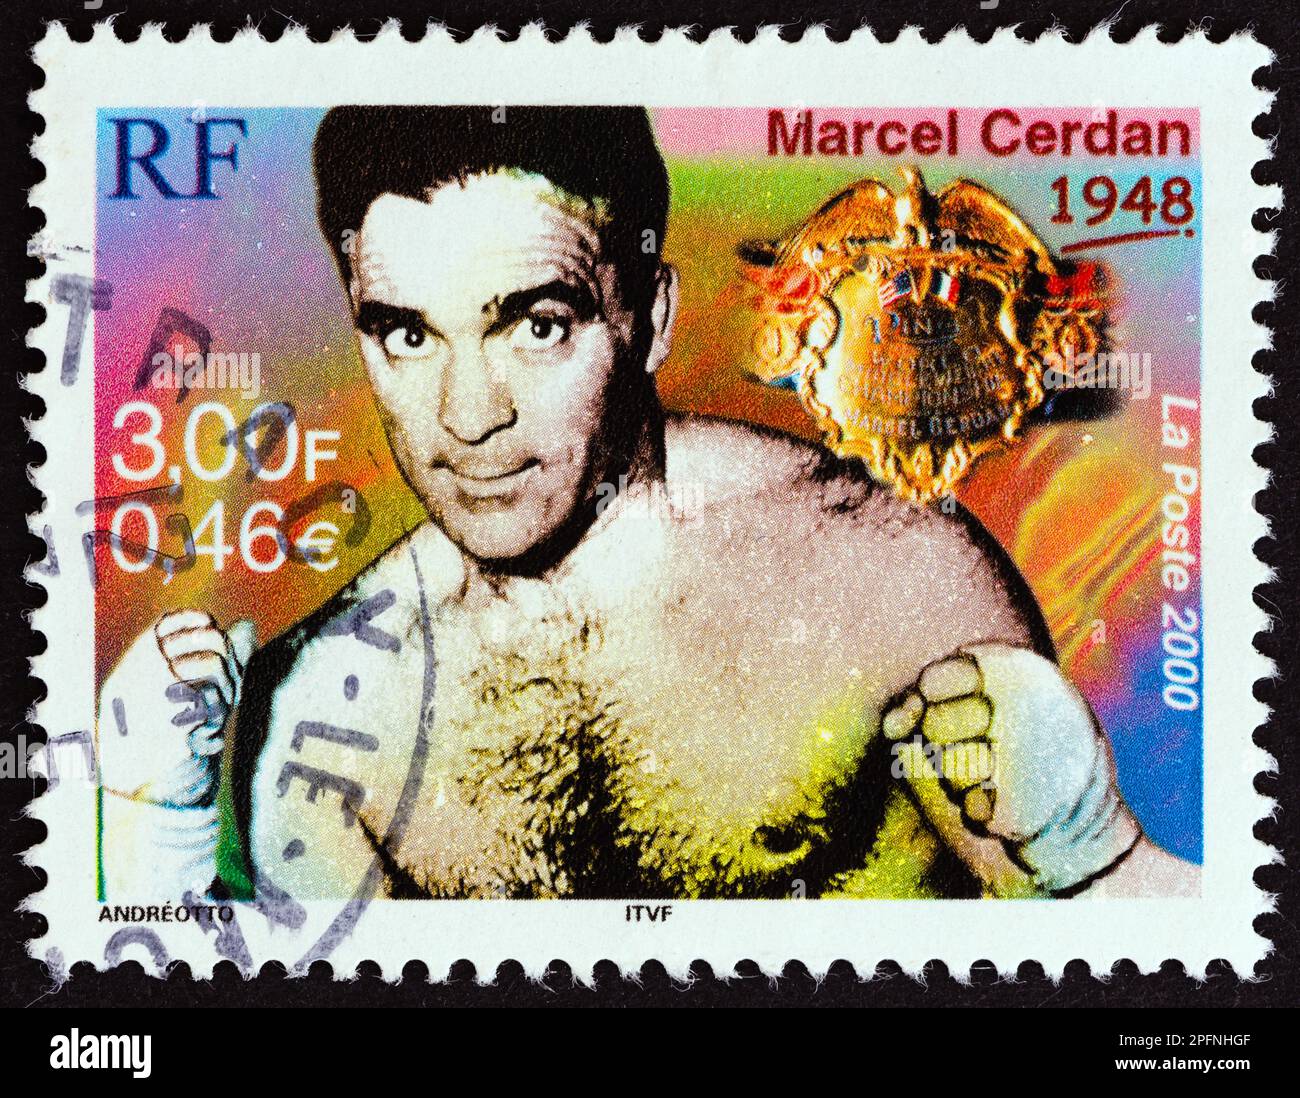 FRANKREICH - CA. 2000: Ein in Frankreich gedruckter Stempel zeigt Marcel Cerdan (Weltmeister im Mittelgewicht, 1948), ca. 2000. Stockfoto